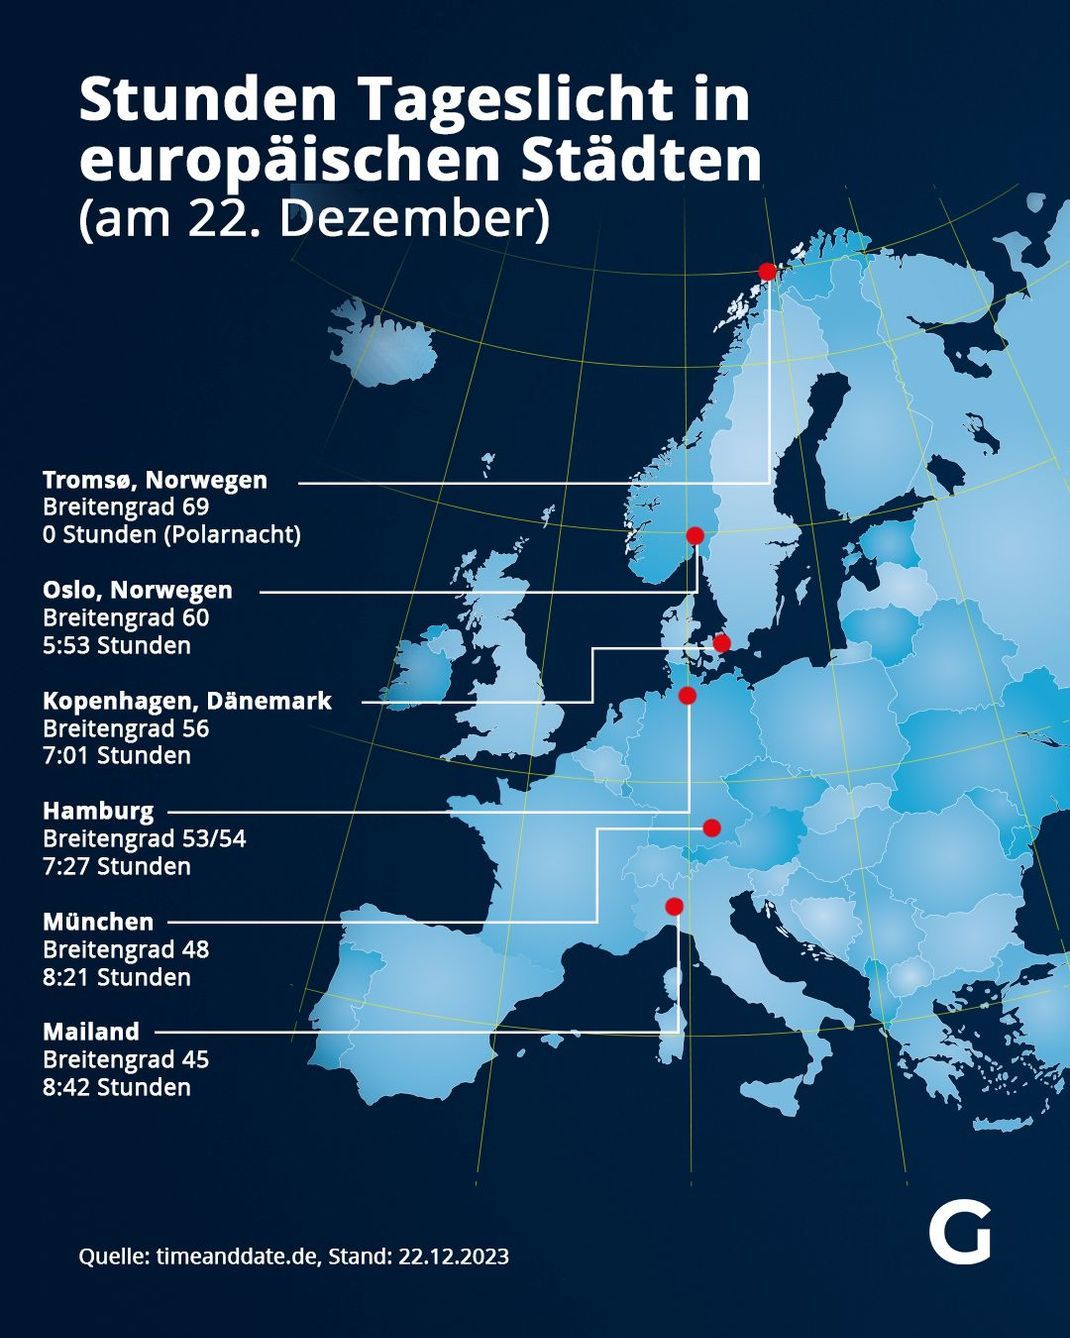 Stunden Tageslicht in europäischen Städten - am 22. Dezember